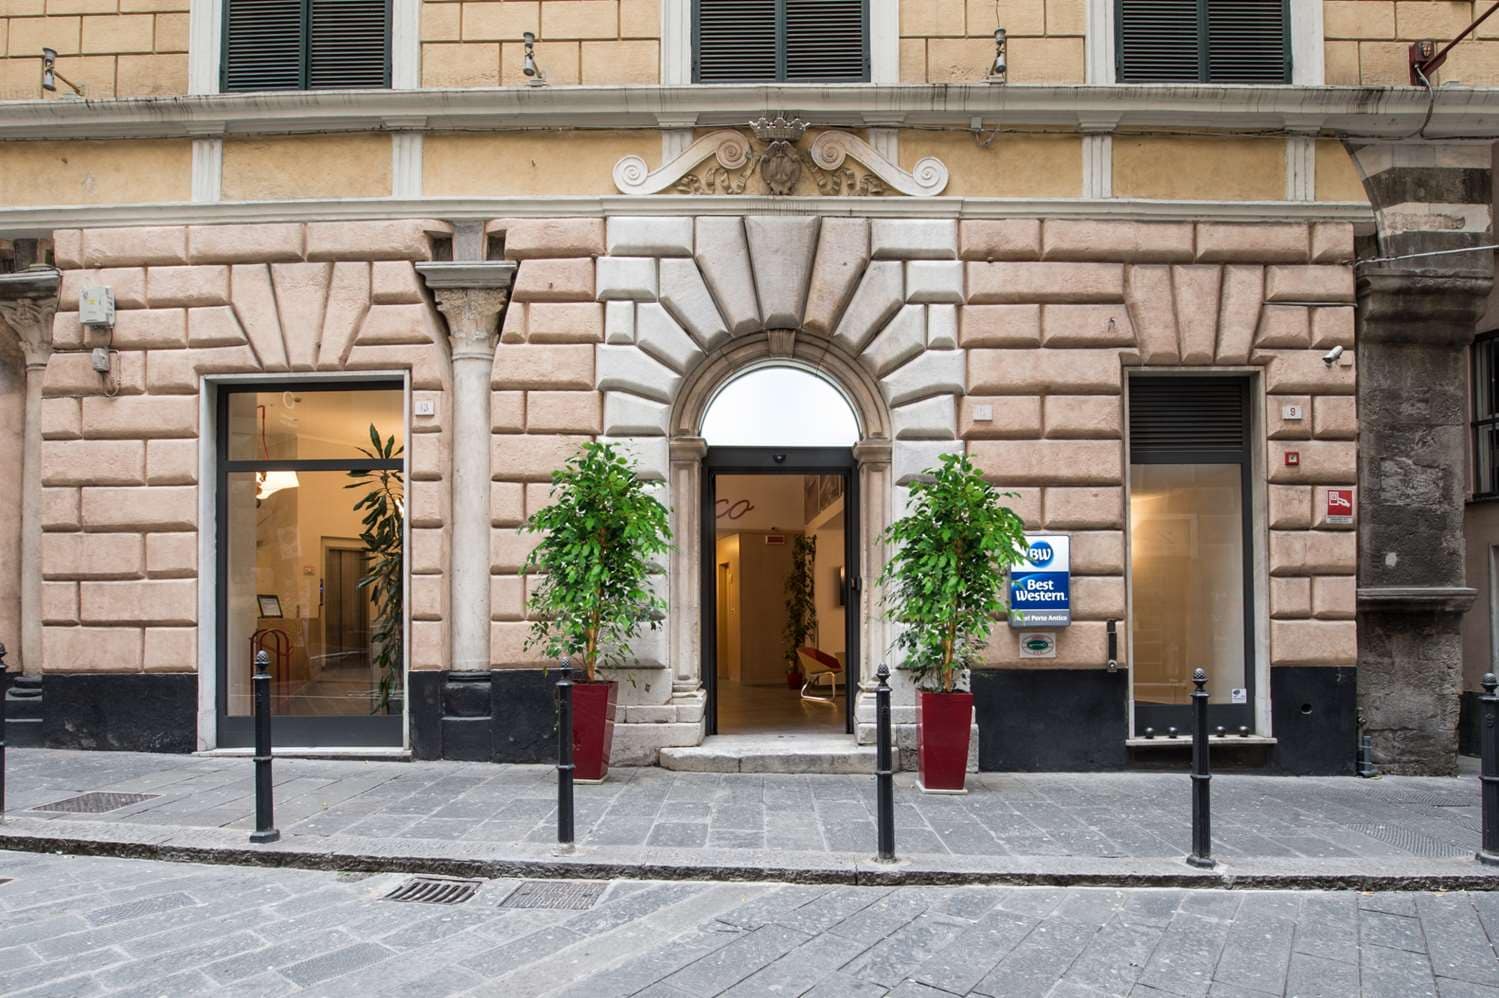 Trova la tua cucina moderna a Genova, qui da Mobili Zena - Mobili Zena